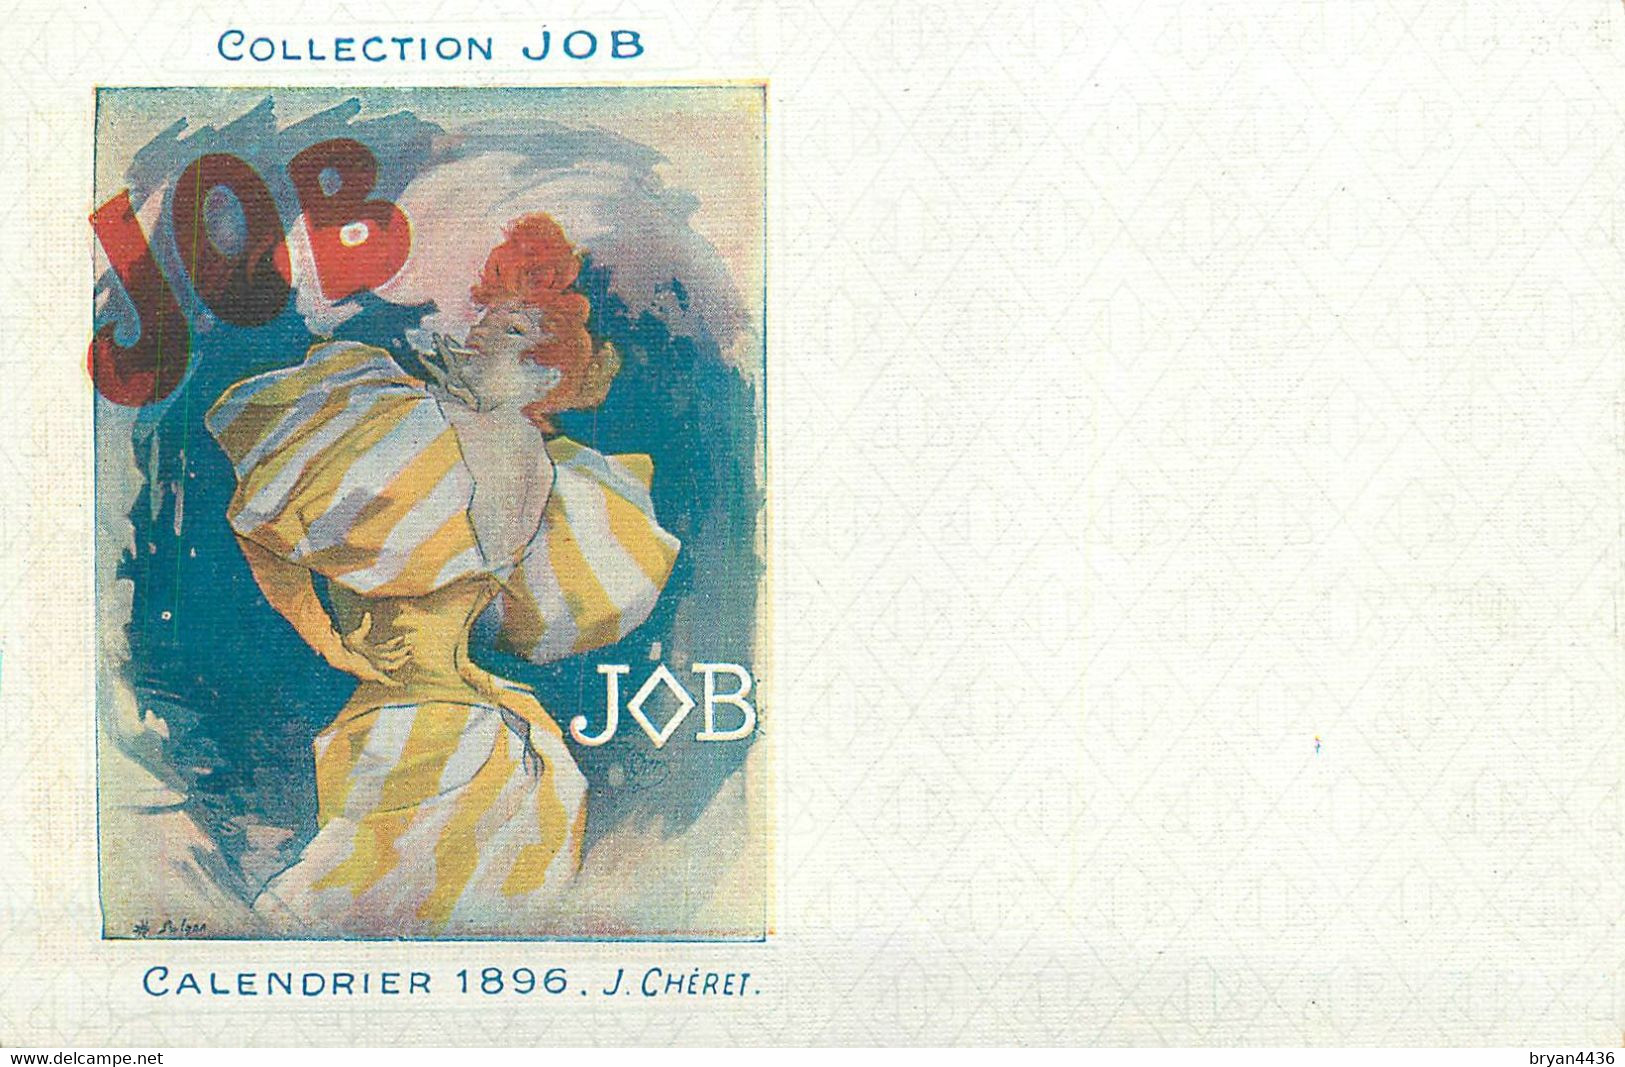 ART NOUVEAU POST CARD - COLLECTION JOB - J. CHERET - CALENDRIER - 1896 - TRES BON ETAT. - Chéret